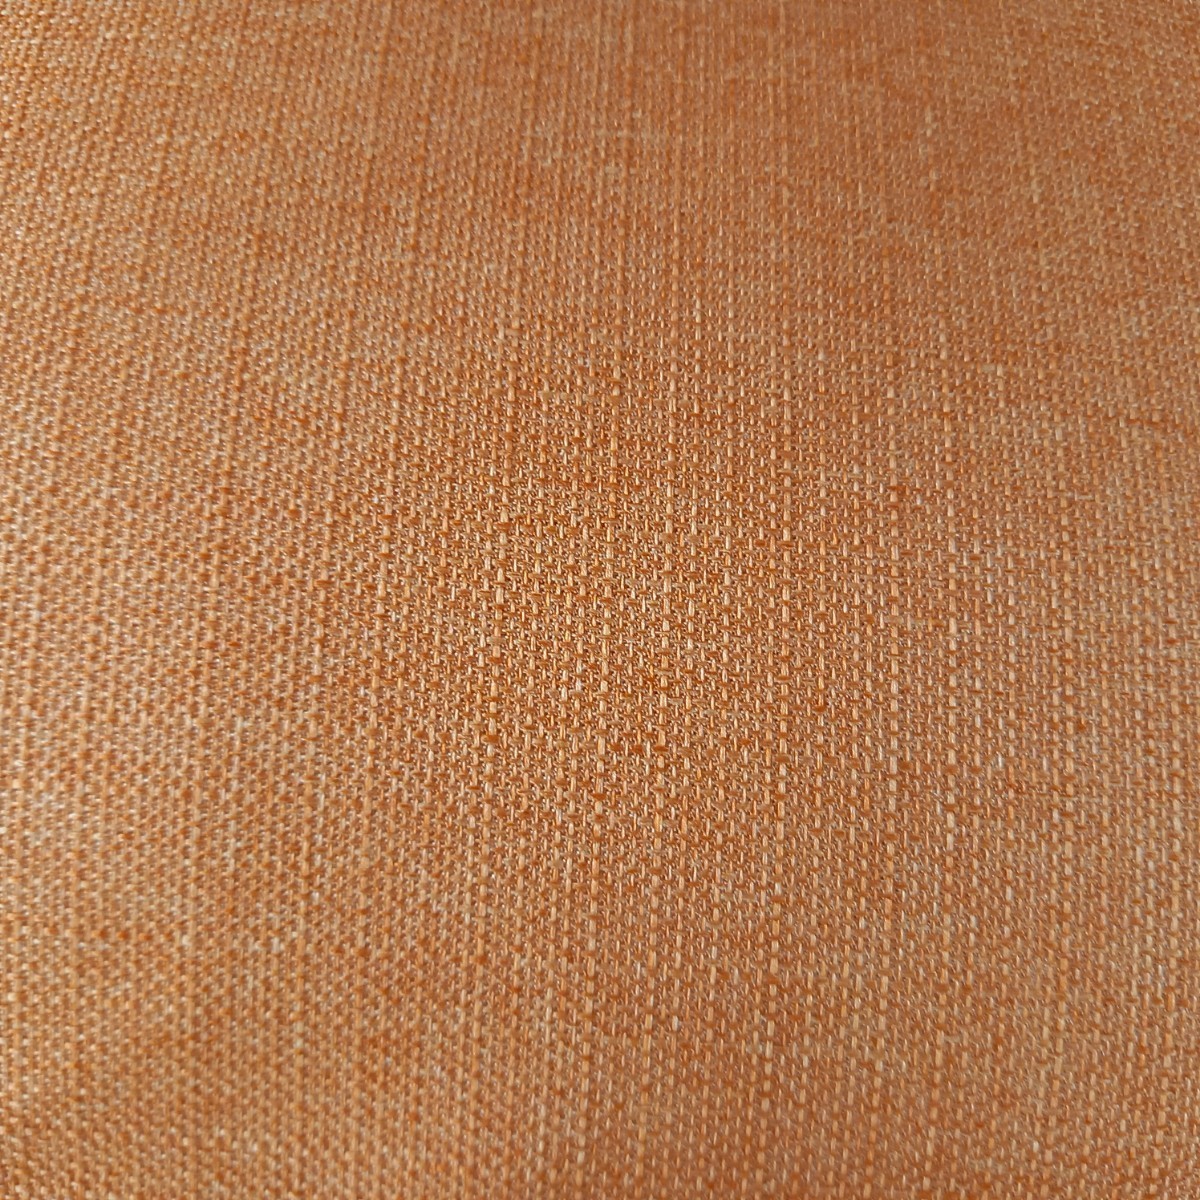 超撥水加工 長方形 こたつ布団 厚手生地 ボリューム 厚掛け オレンジ 清潔 安心 日本製 (羽毛布団 掛け布団 敷布団 枕)出品中です。_画像5